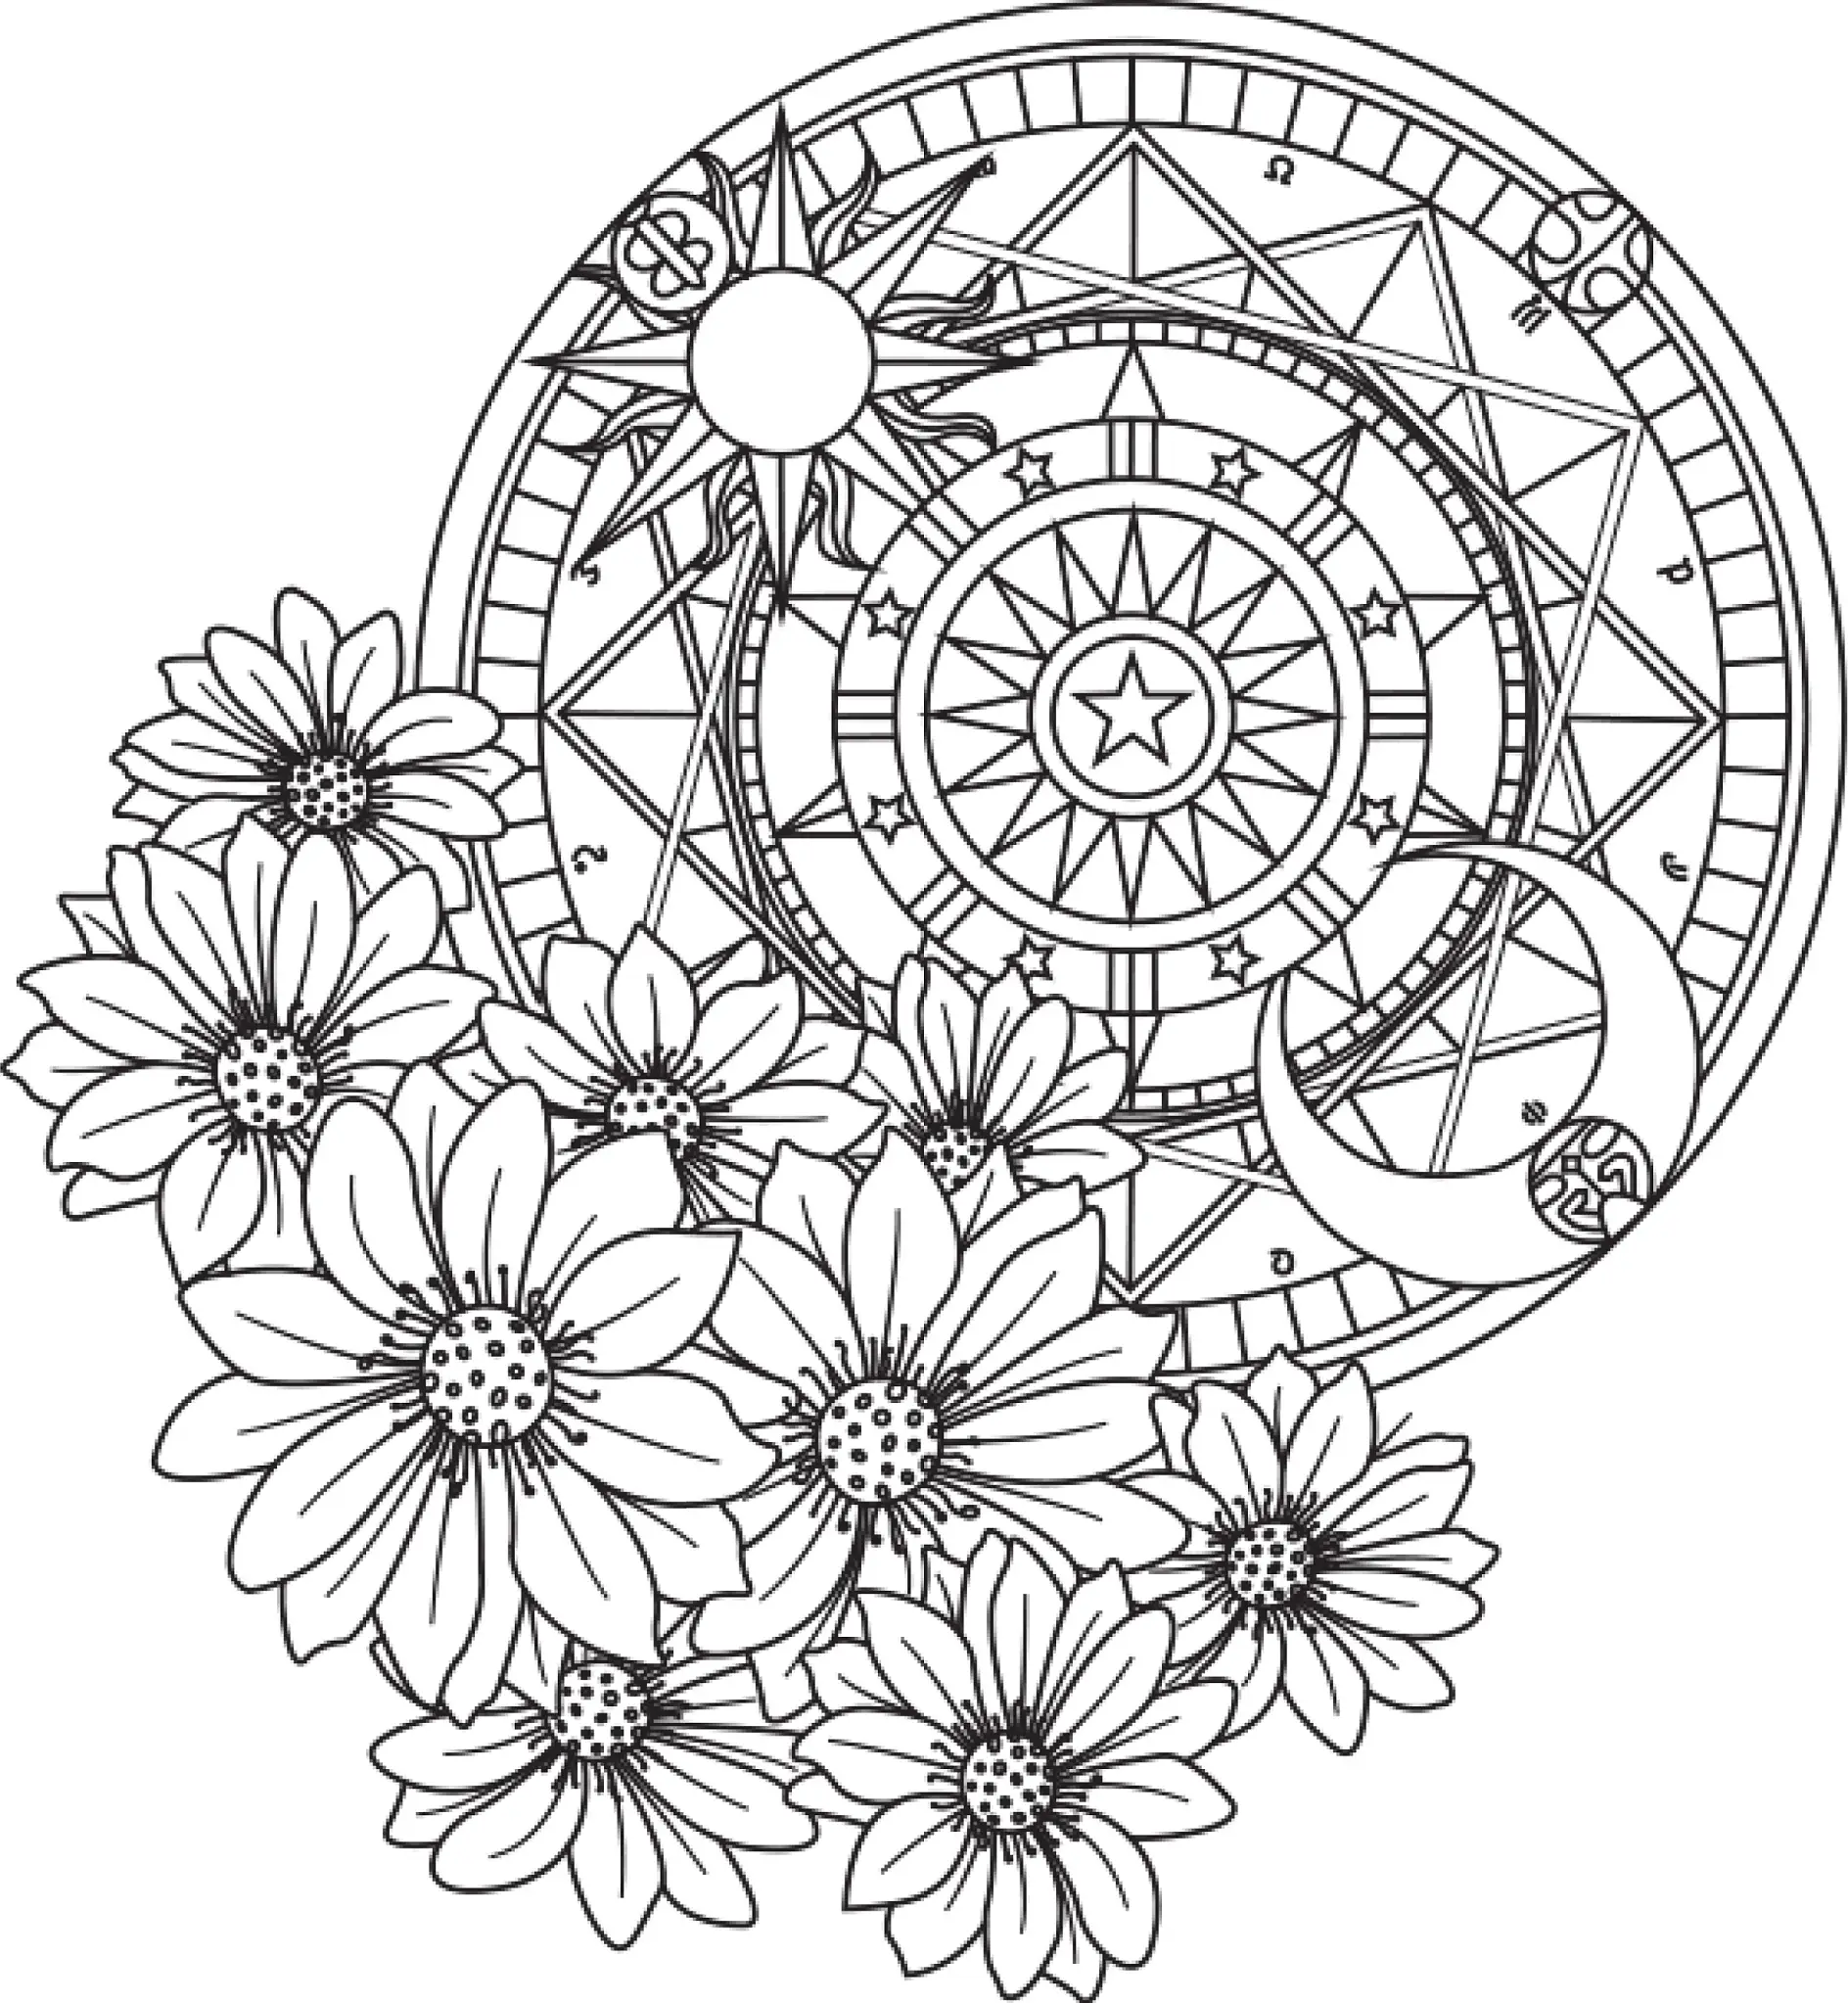 Ausmalbild Mandala mit Blumen und einem astronomischen Design im Hintergrund